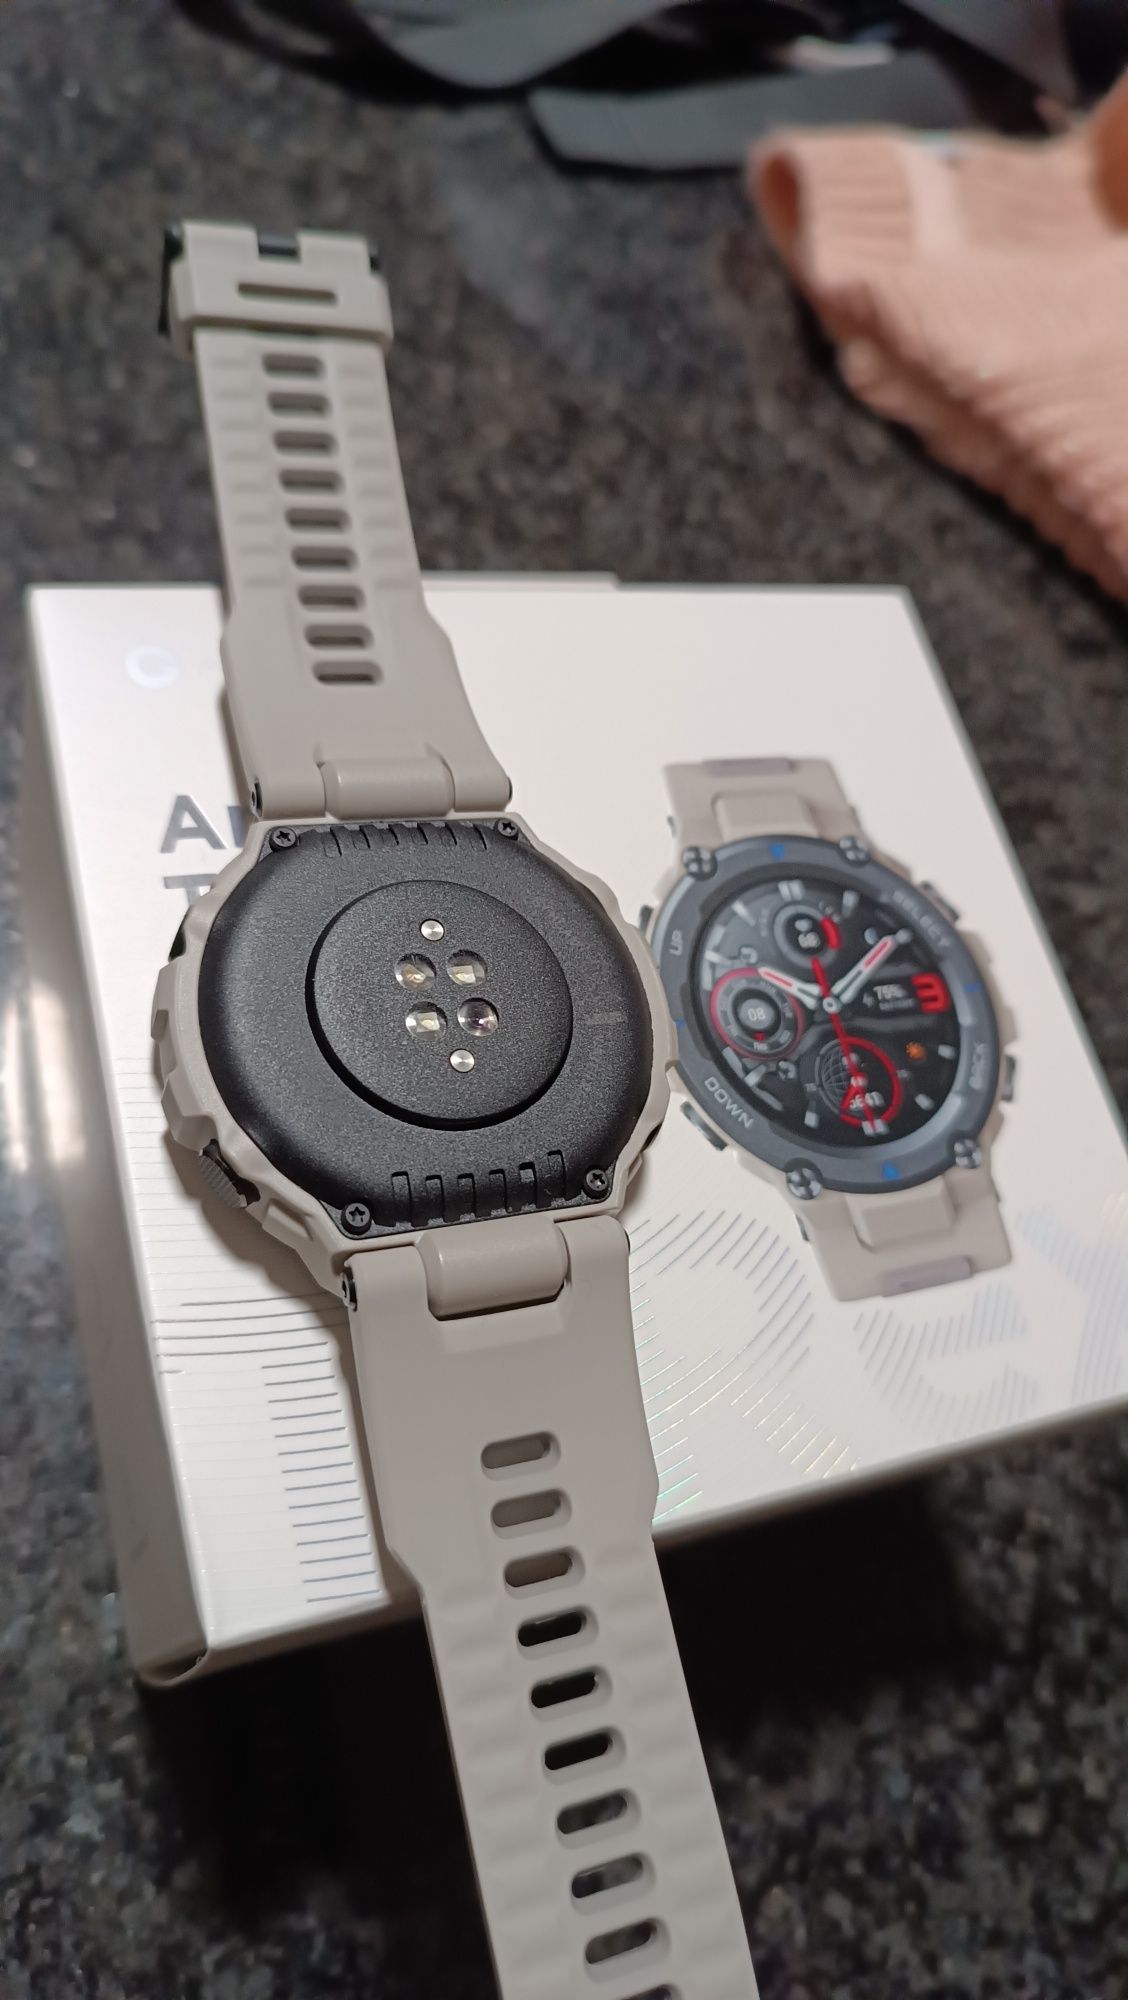 Smartwatch Amazfit T-Rex Pro